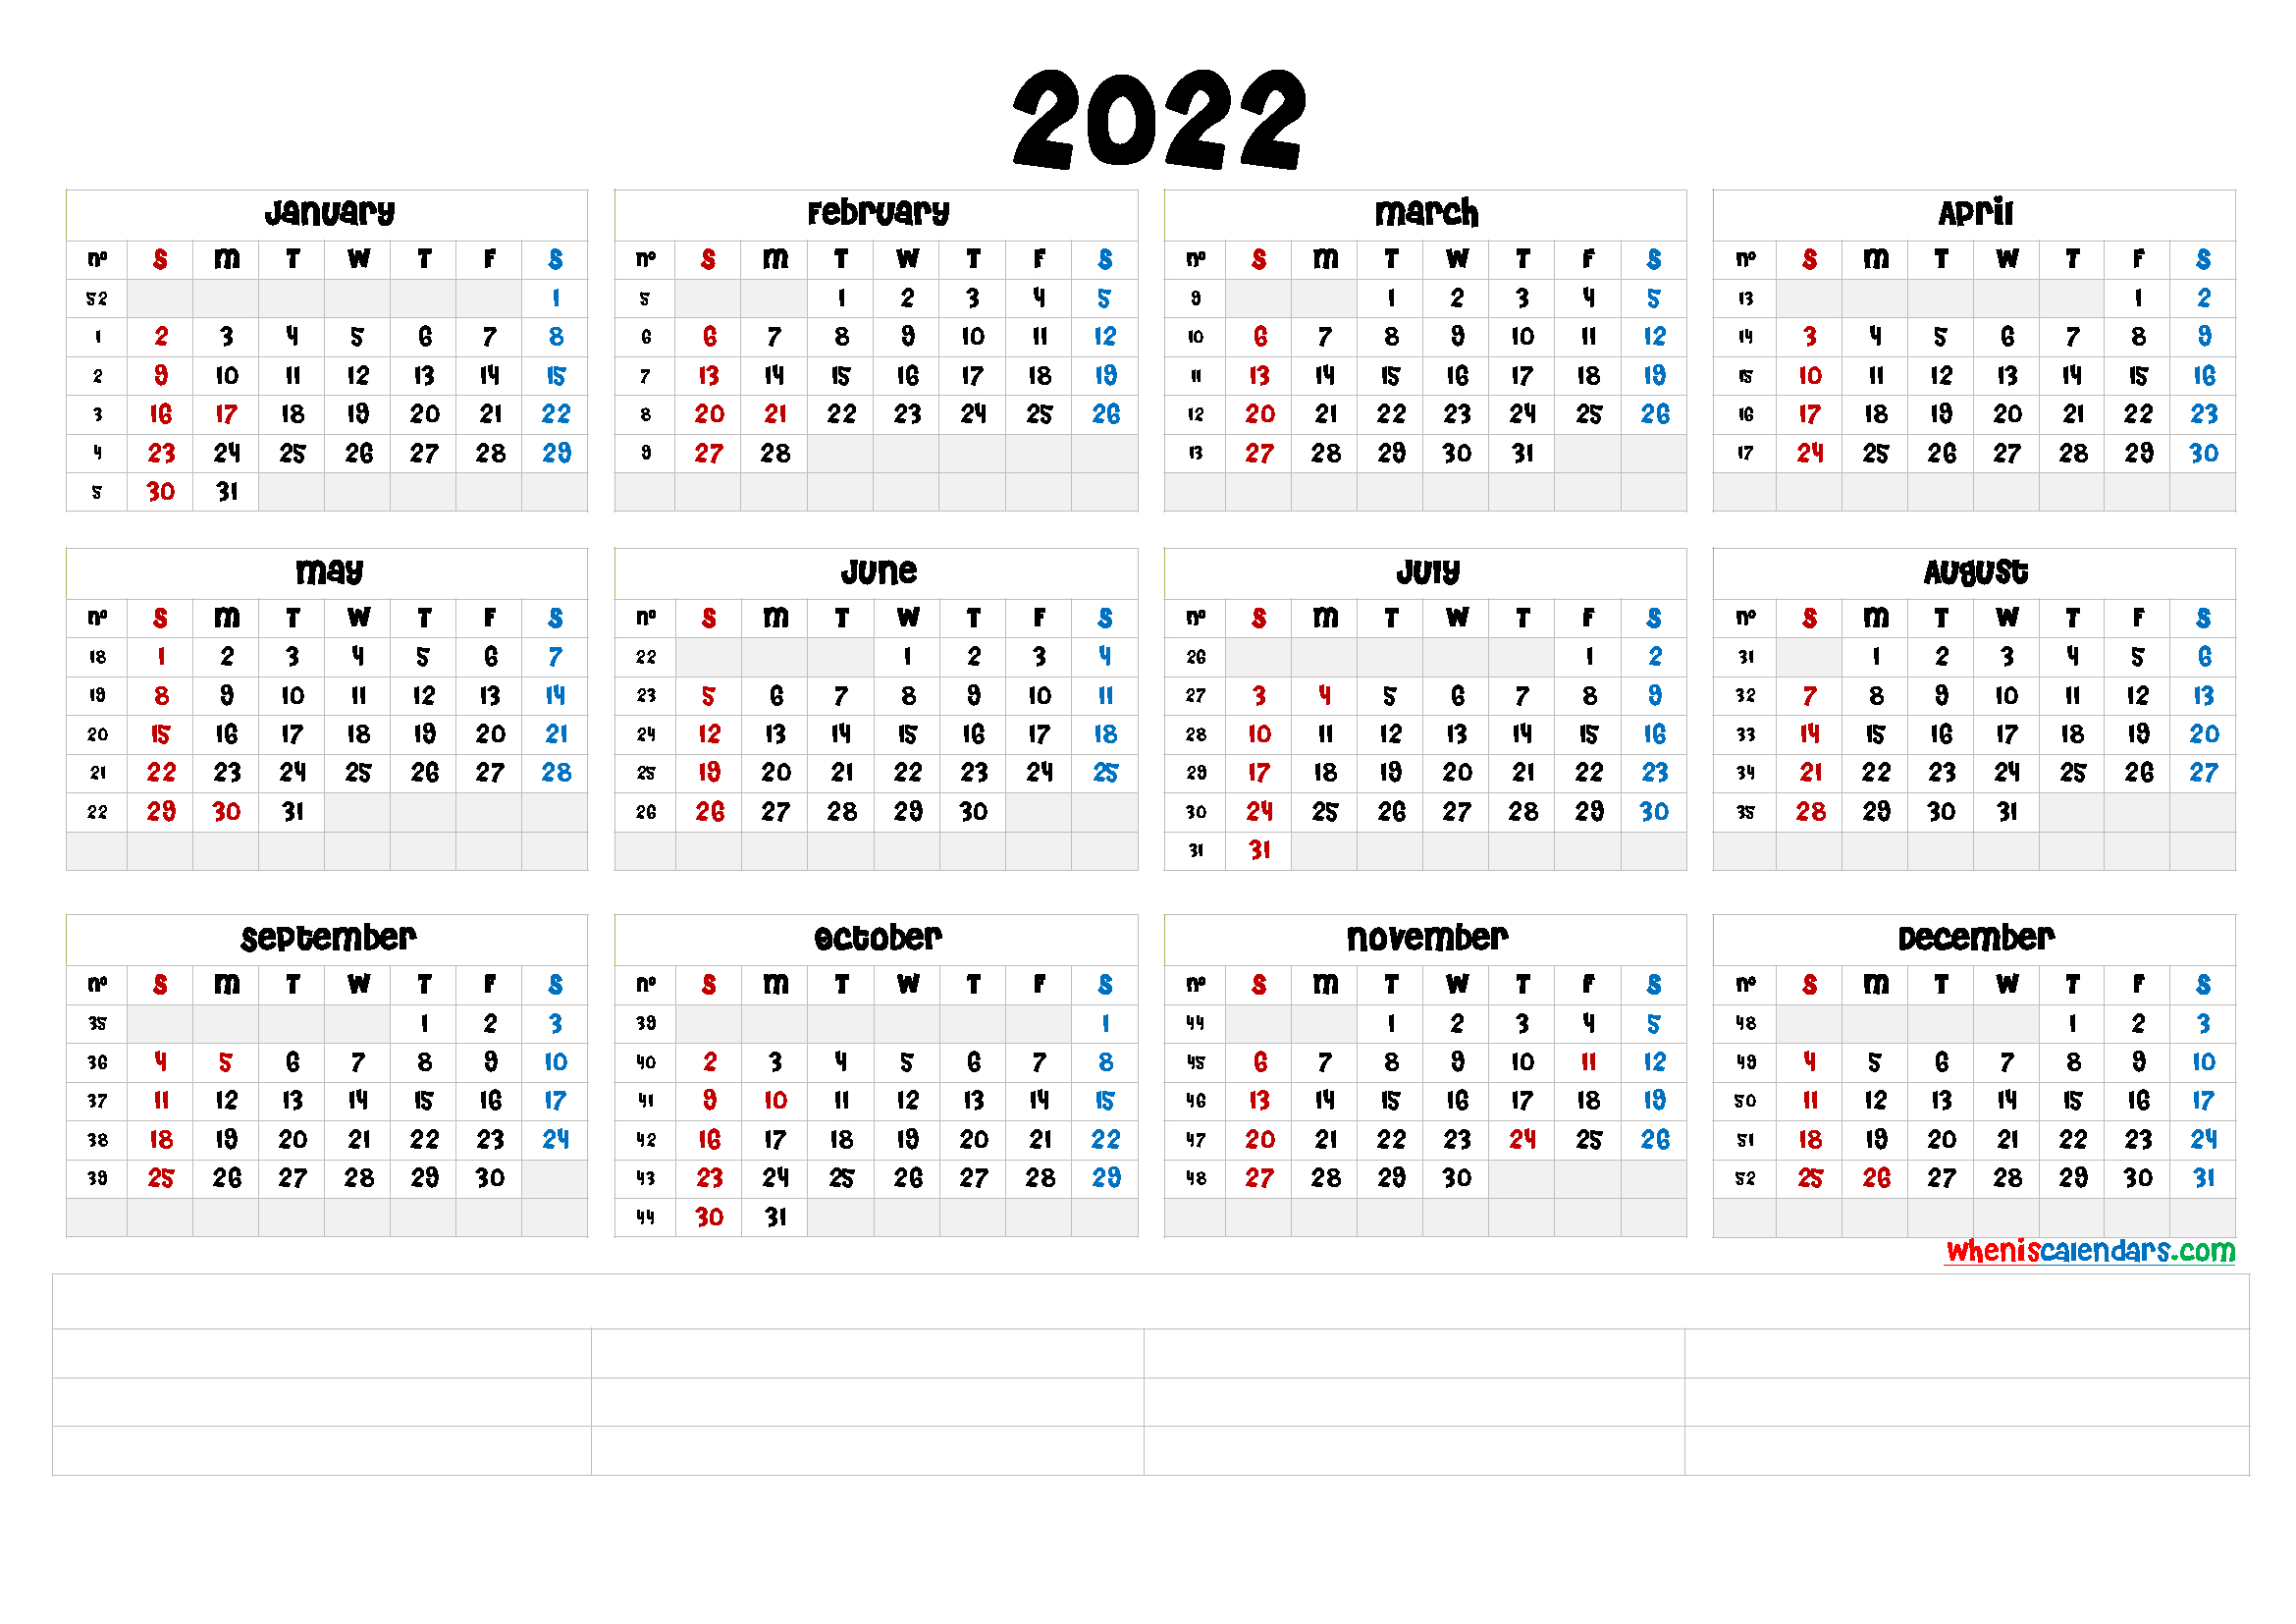 2022 Daily Calendar - Nexta